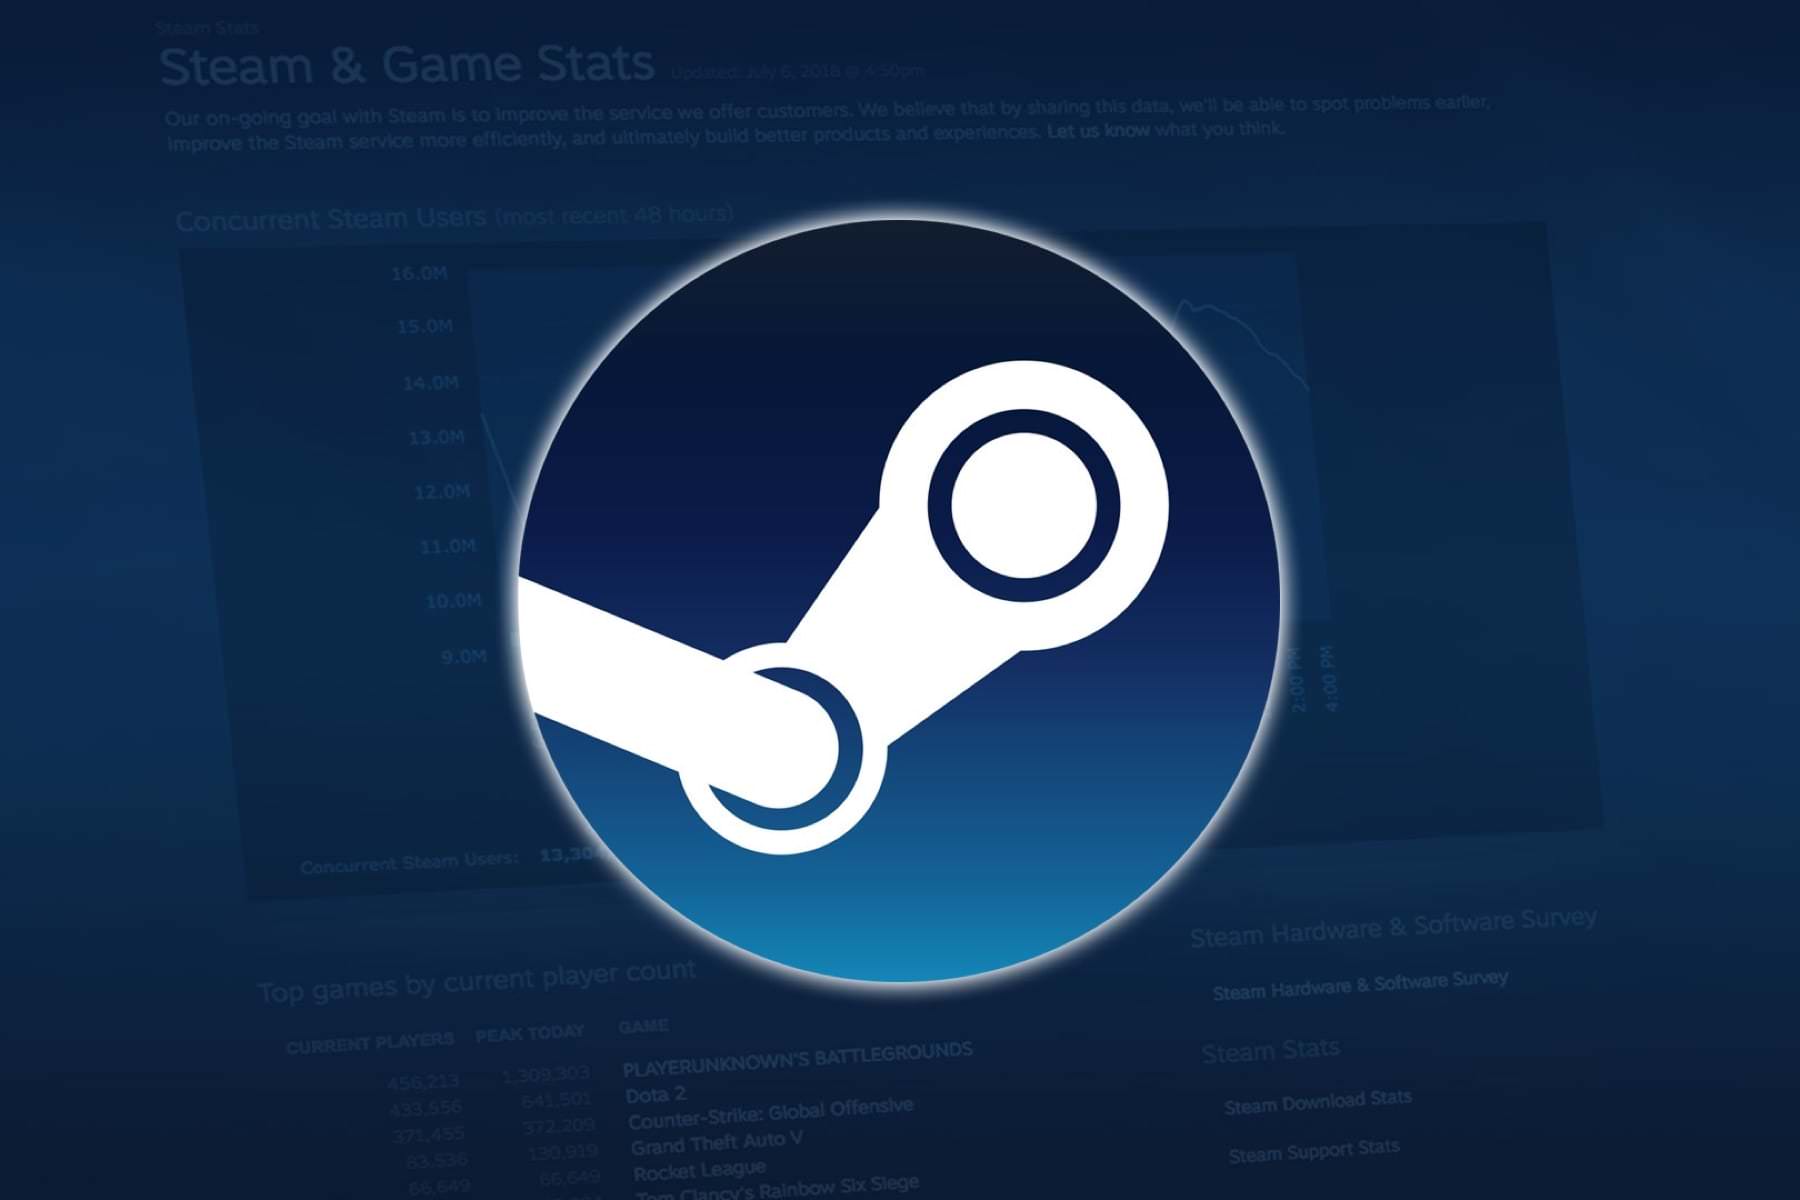 Компания Wolfire Games подала в суд на Valve за то, что та душит конкуренцию и берет 30% с продаж